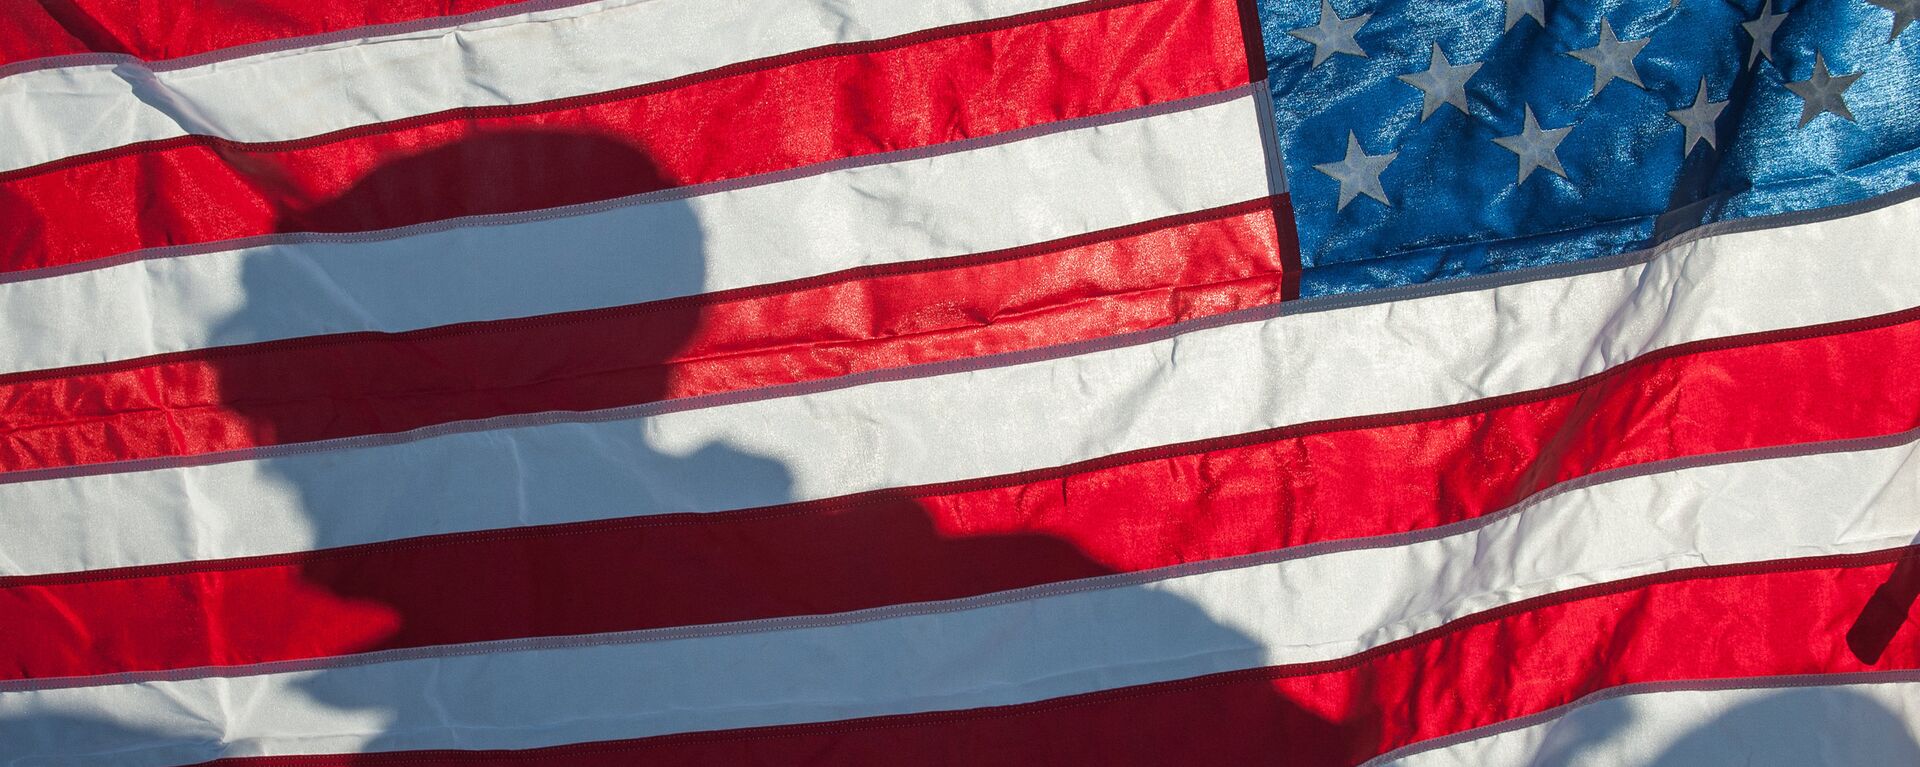 Флаг Соединённых Штатов Америки на демонстрации военной техники и вооружения НАТО в Латвии - Sputnik Латвия, 1920, 17.01.2019